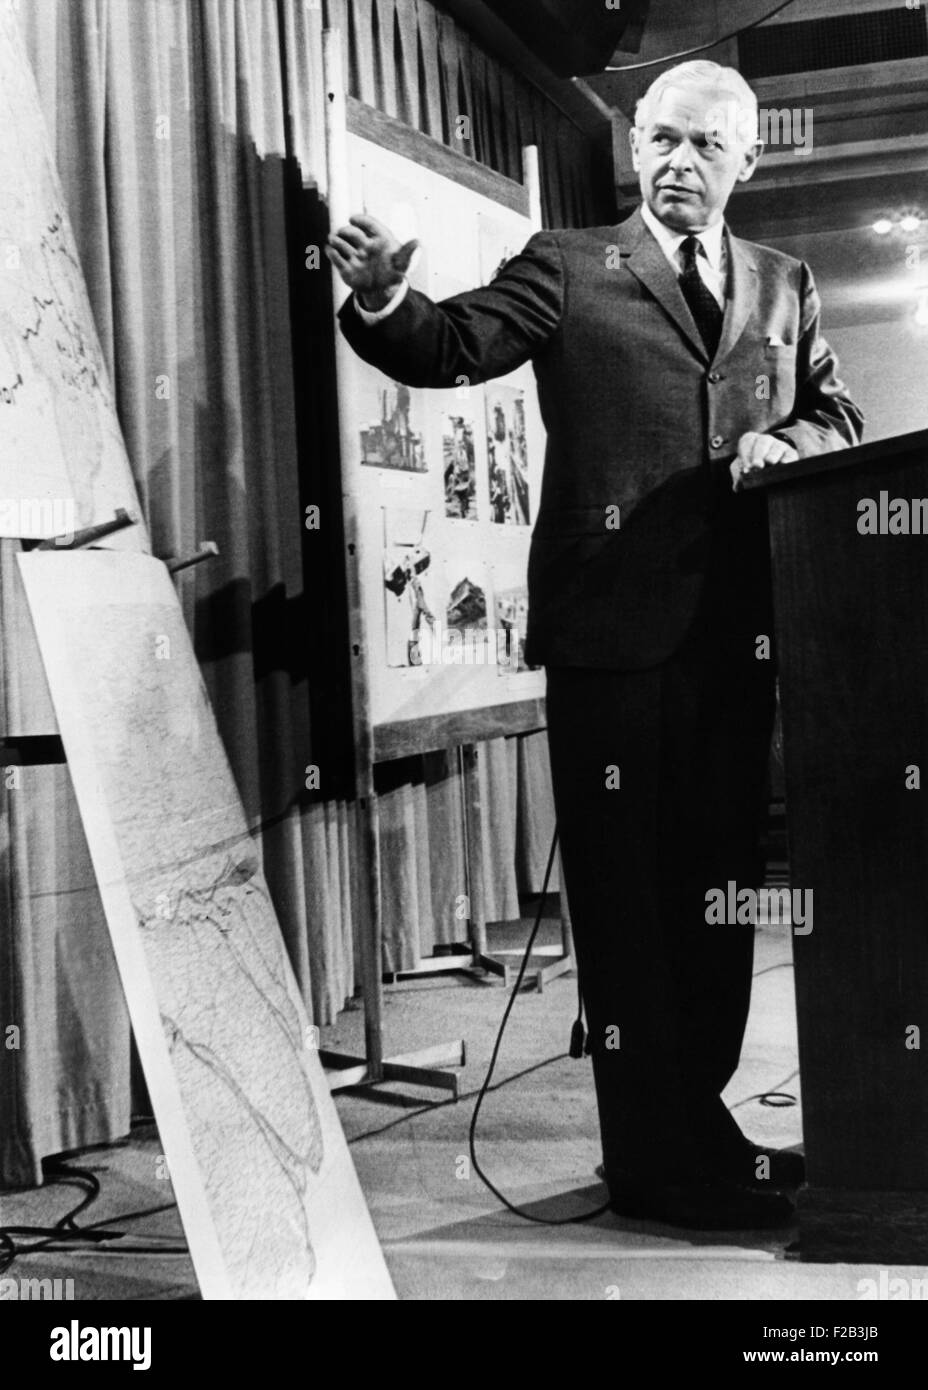 Sec de la marine. Paul Nitze, lors d'une conférence du Pentagone pendant la guerre du Vietnam, le 22 juillet 1966. Il a servi plusieurs présidents de FDR pendant la Seconde Guerre mondiale pour Ronald Reagan dans les années 80, les négociations sur les armes avec la Russie soviétique. - (CSU 2015 6 186) Banque D'Images